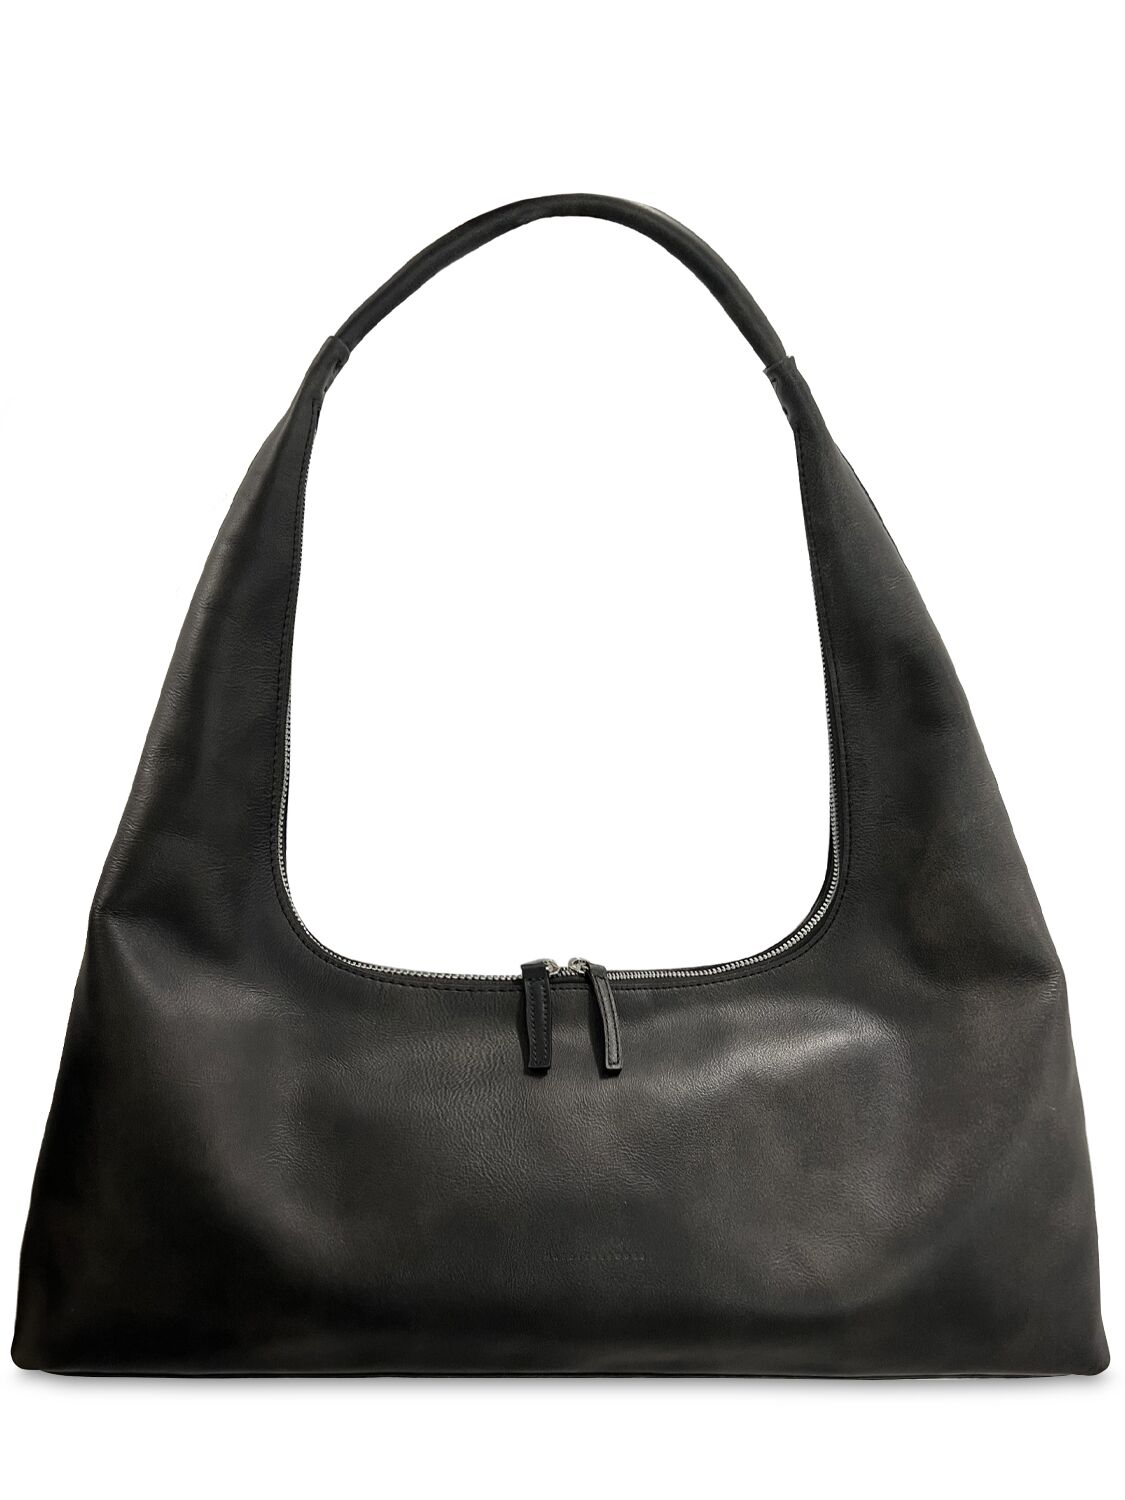 Marge Sherwood Large Hobo Plain Leather Shoulder Bag In Animal Print